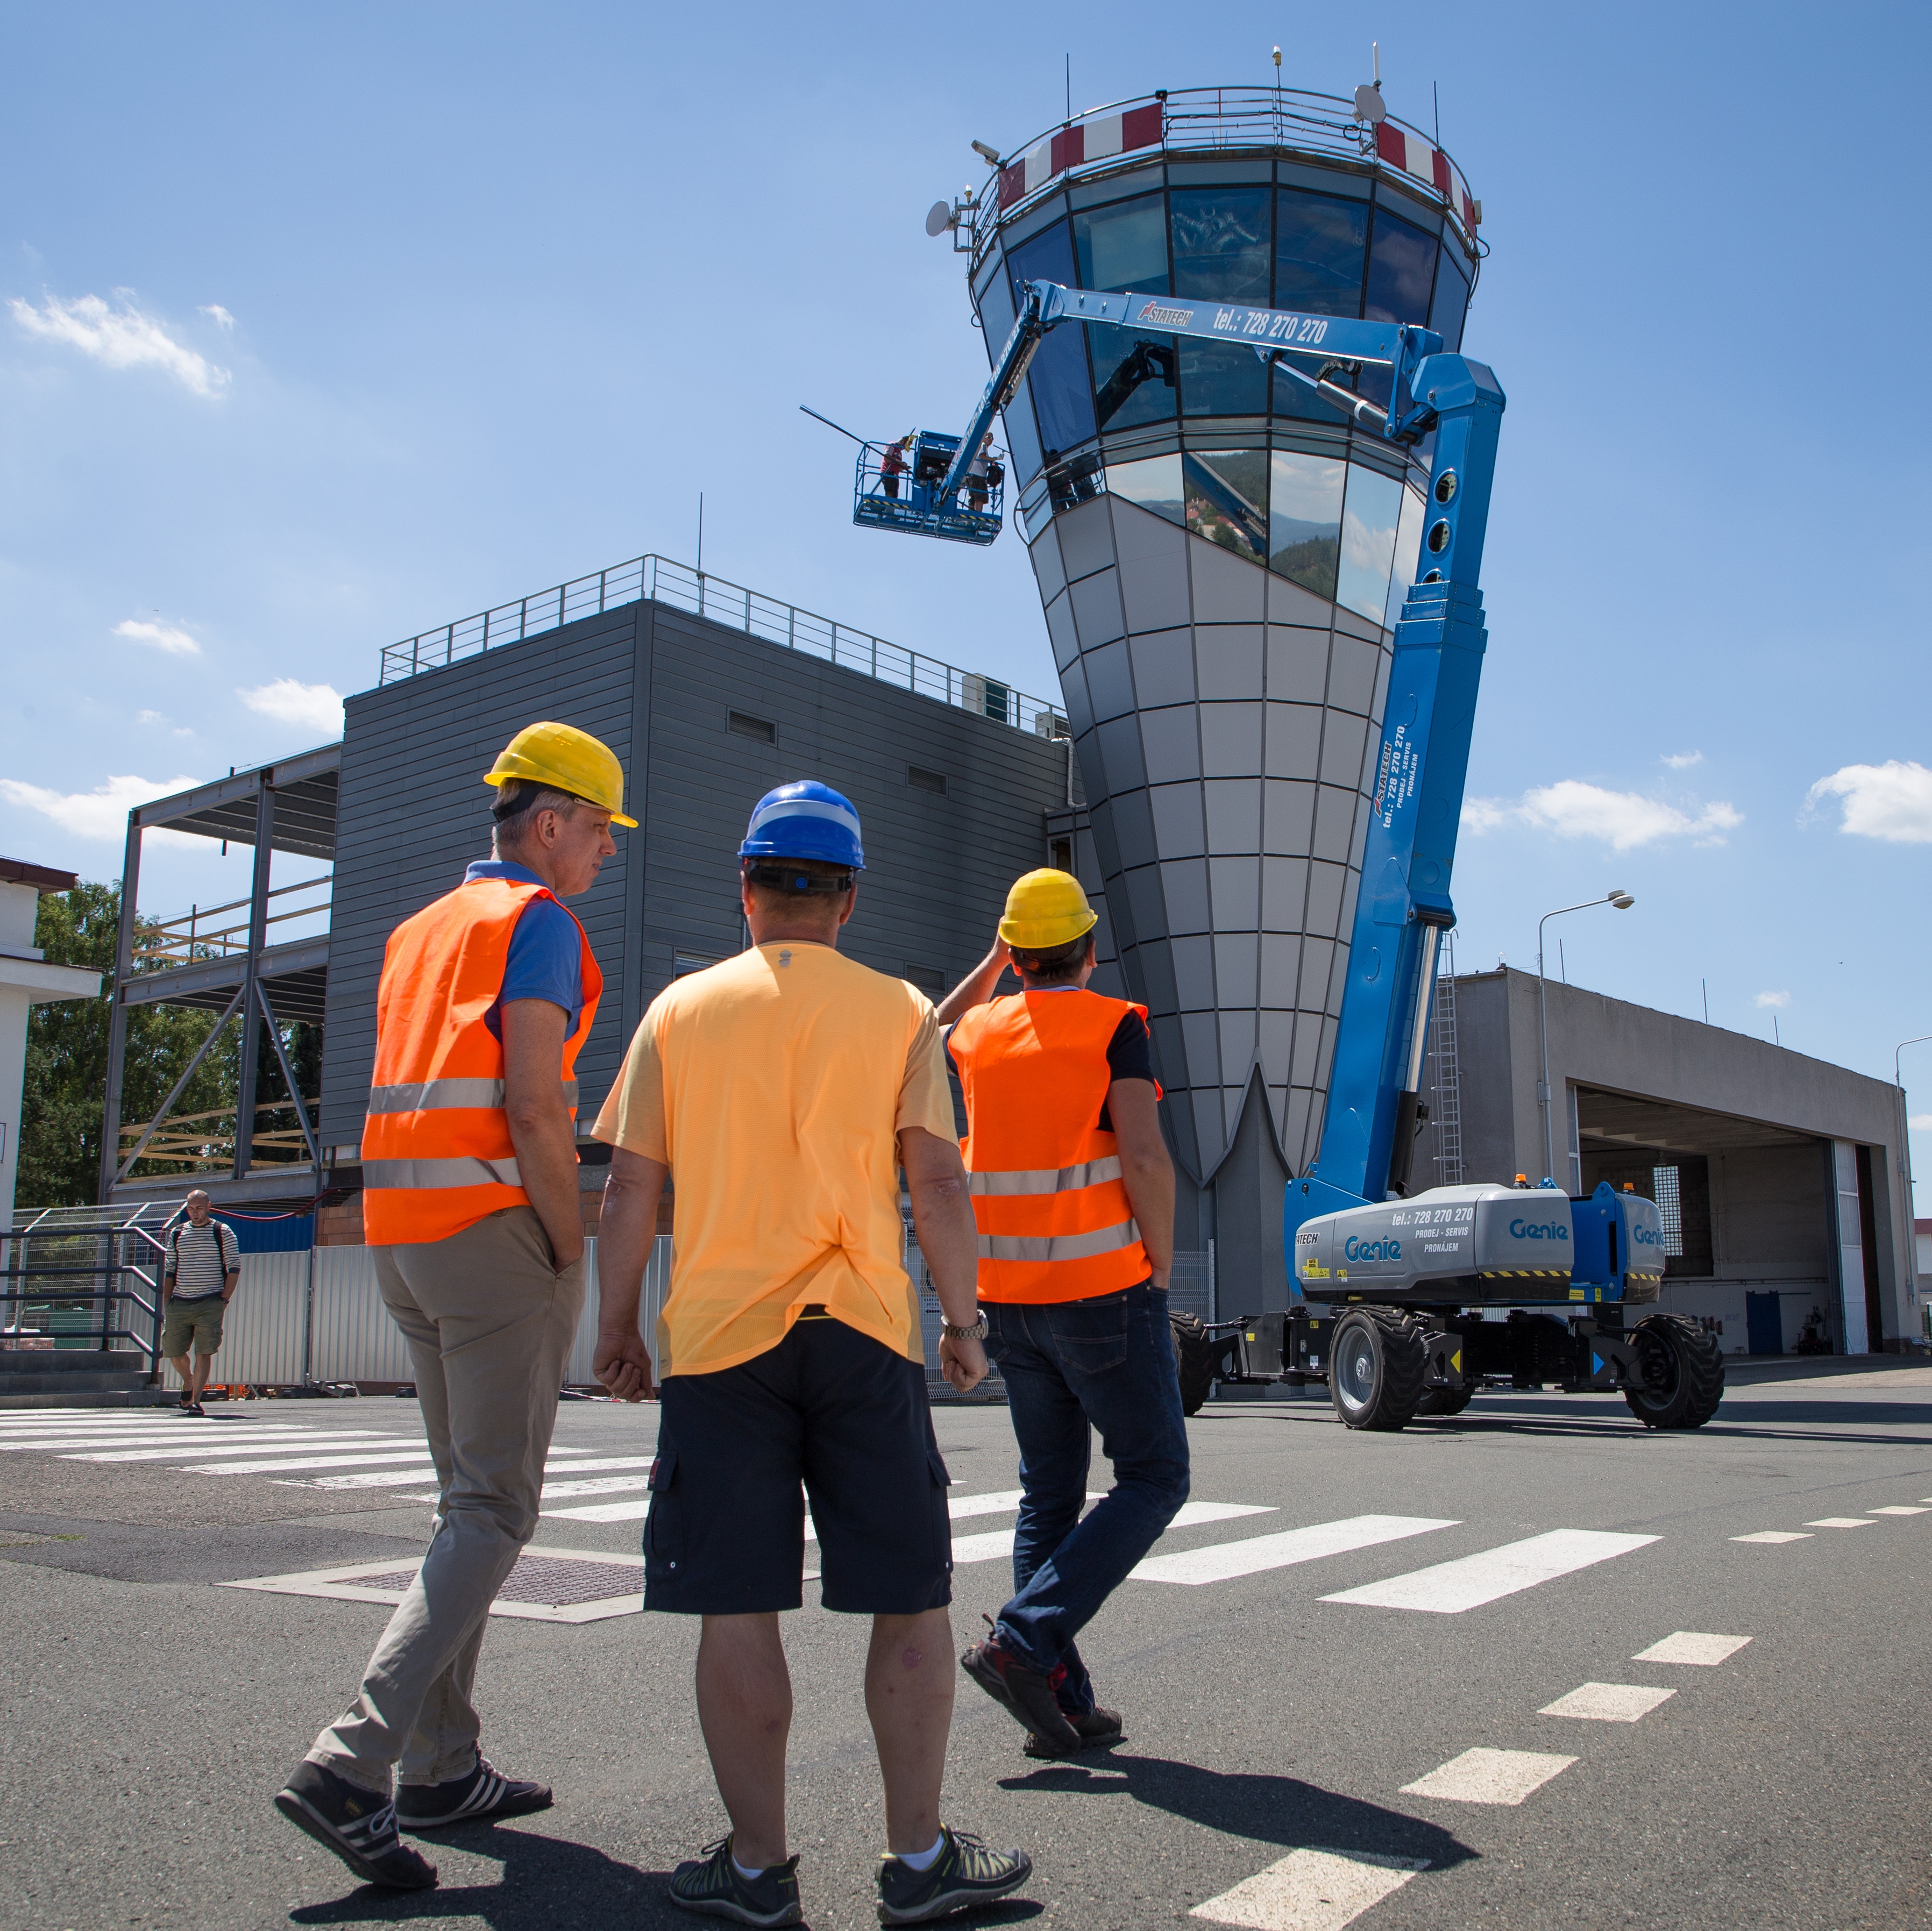 La tour de contrôle de l’aéroport de Karlovy Vary équipée d'un vitrage unique de Sipral